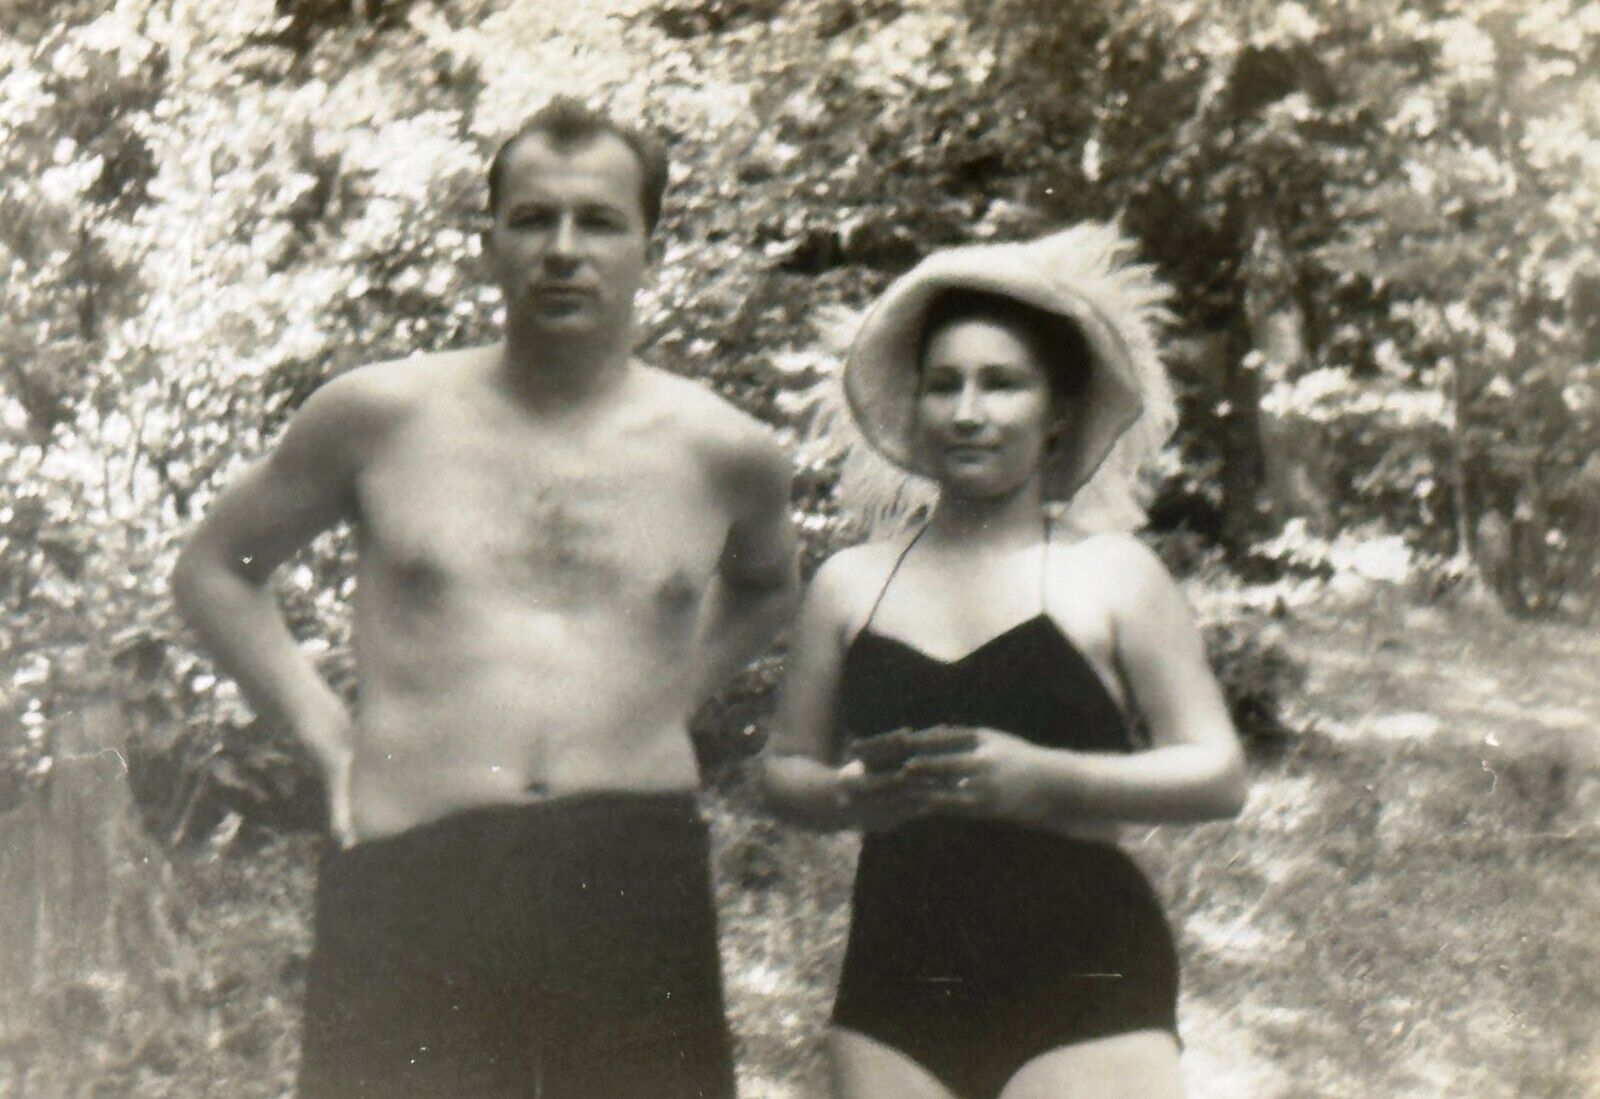 1950s Shirtless Man Trunks Bulge Young Woman Slim Body Vintage Photo Snapshot